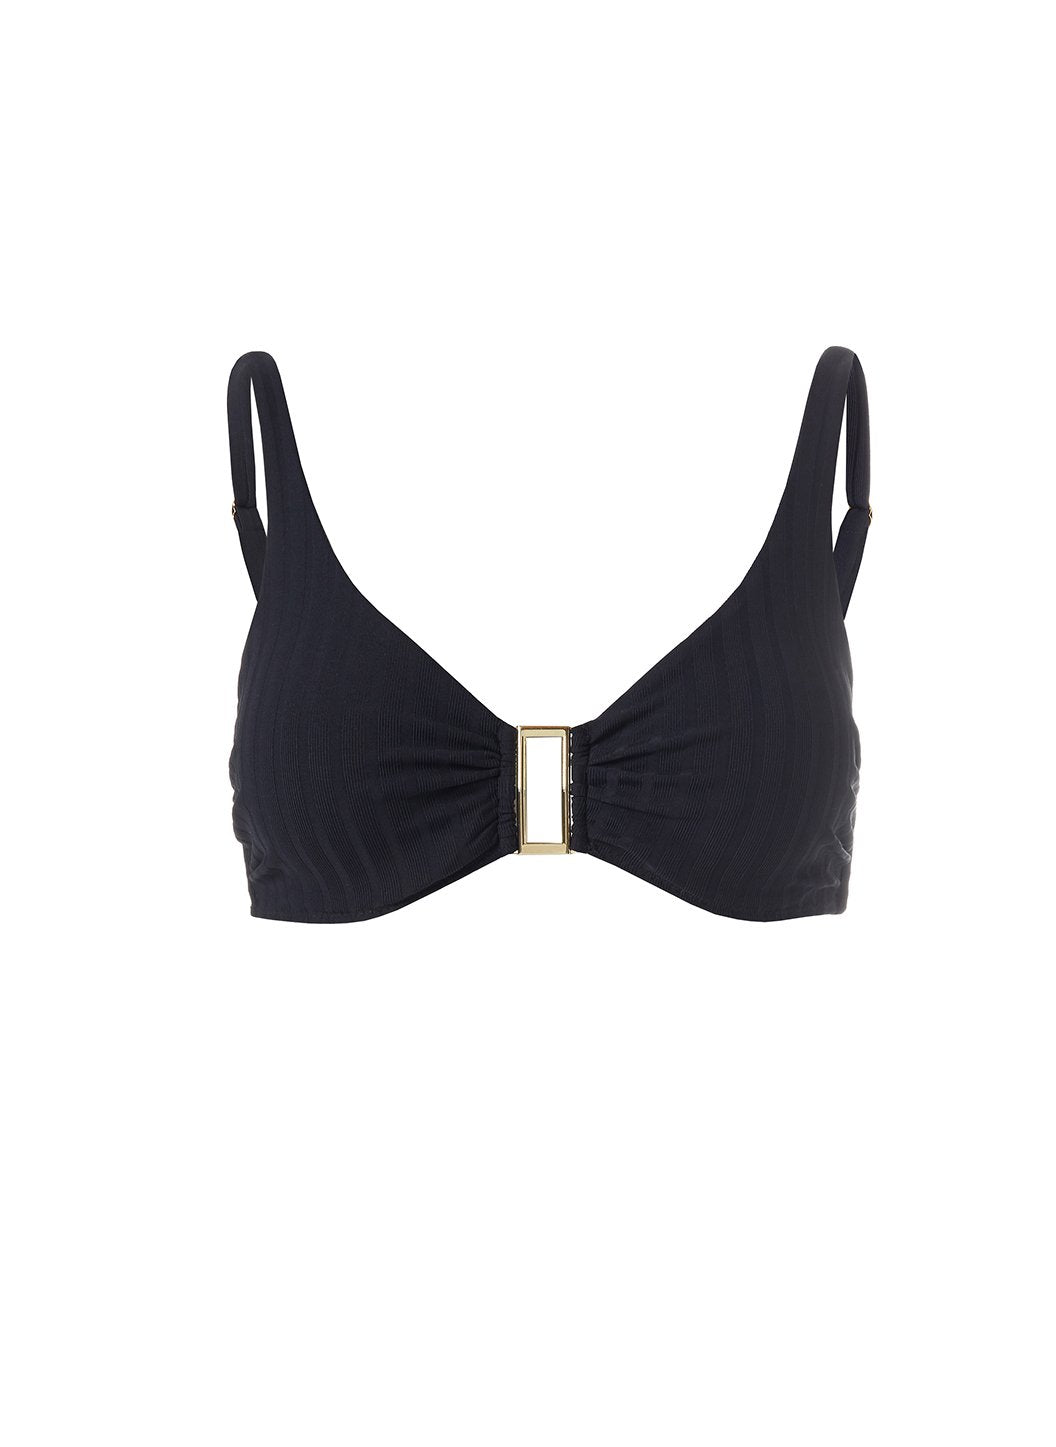 Melissa Odabash Bel Air Black Over The Shoulder Bikini | Official Website